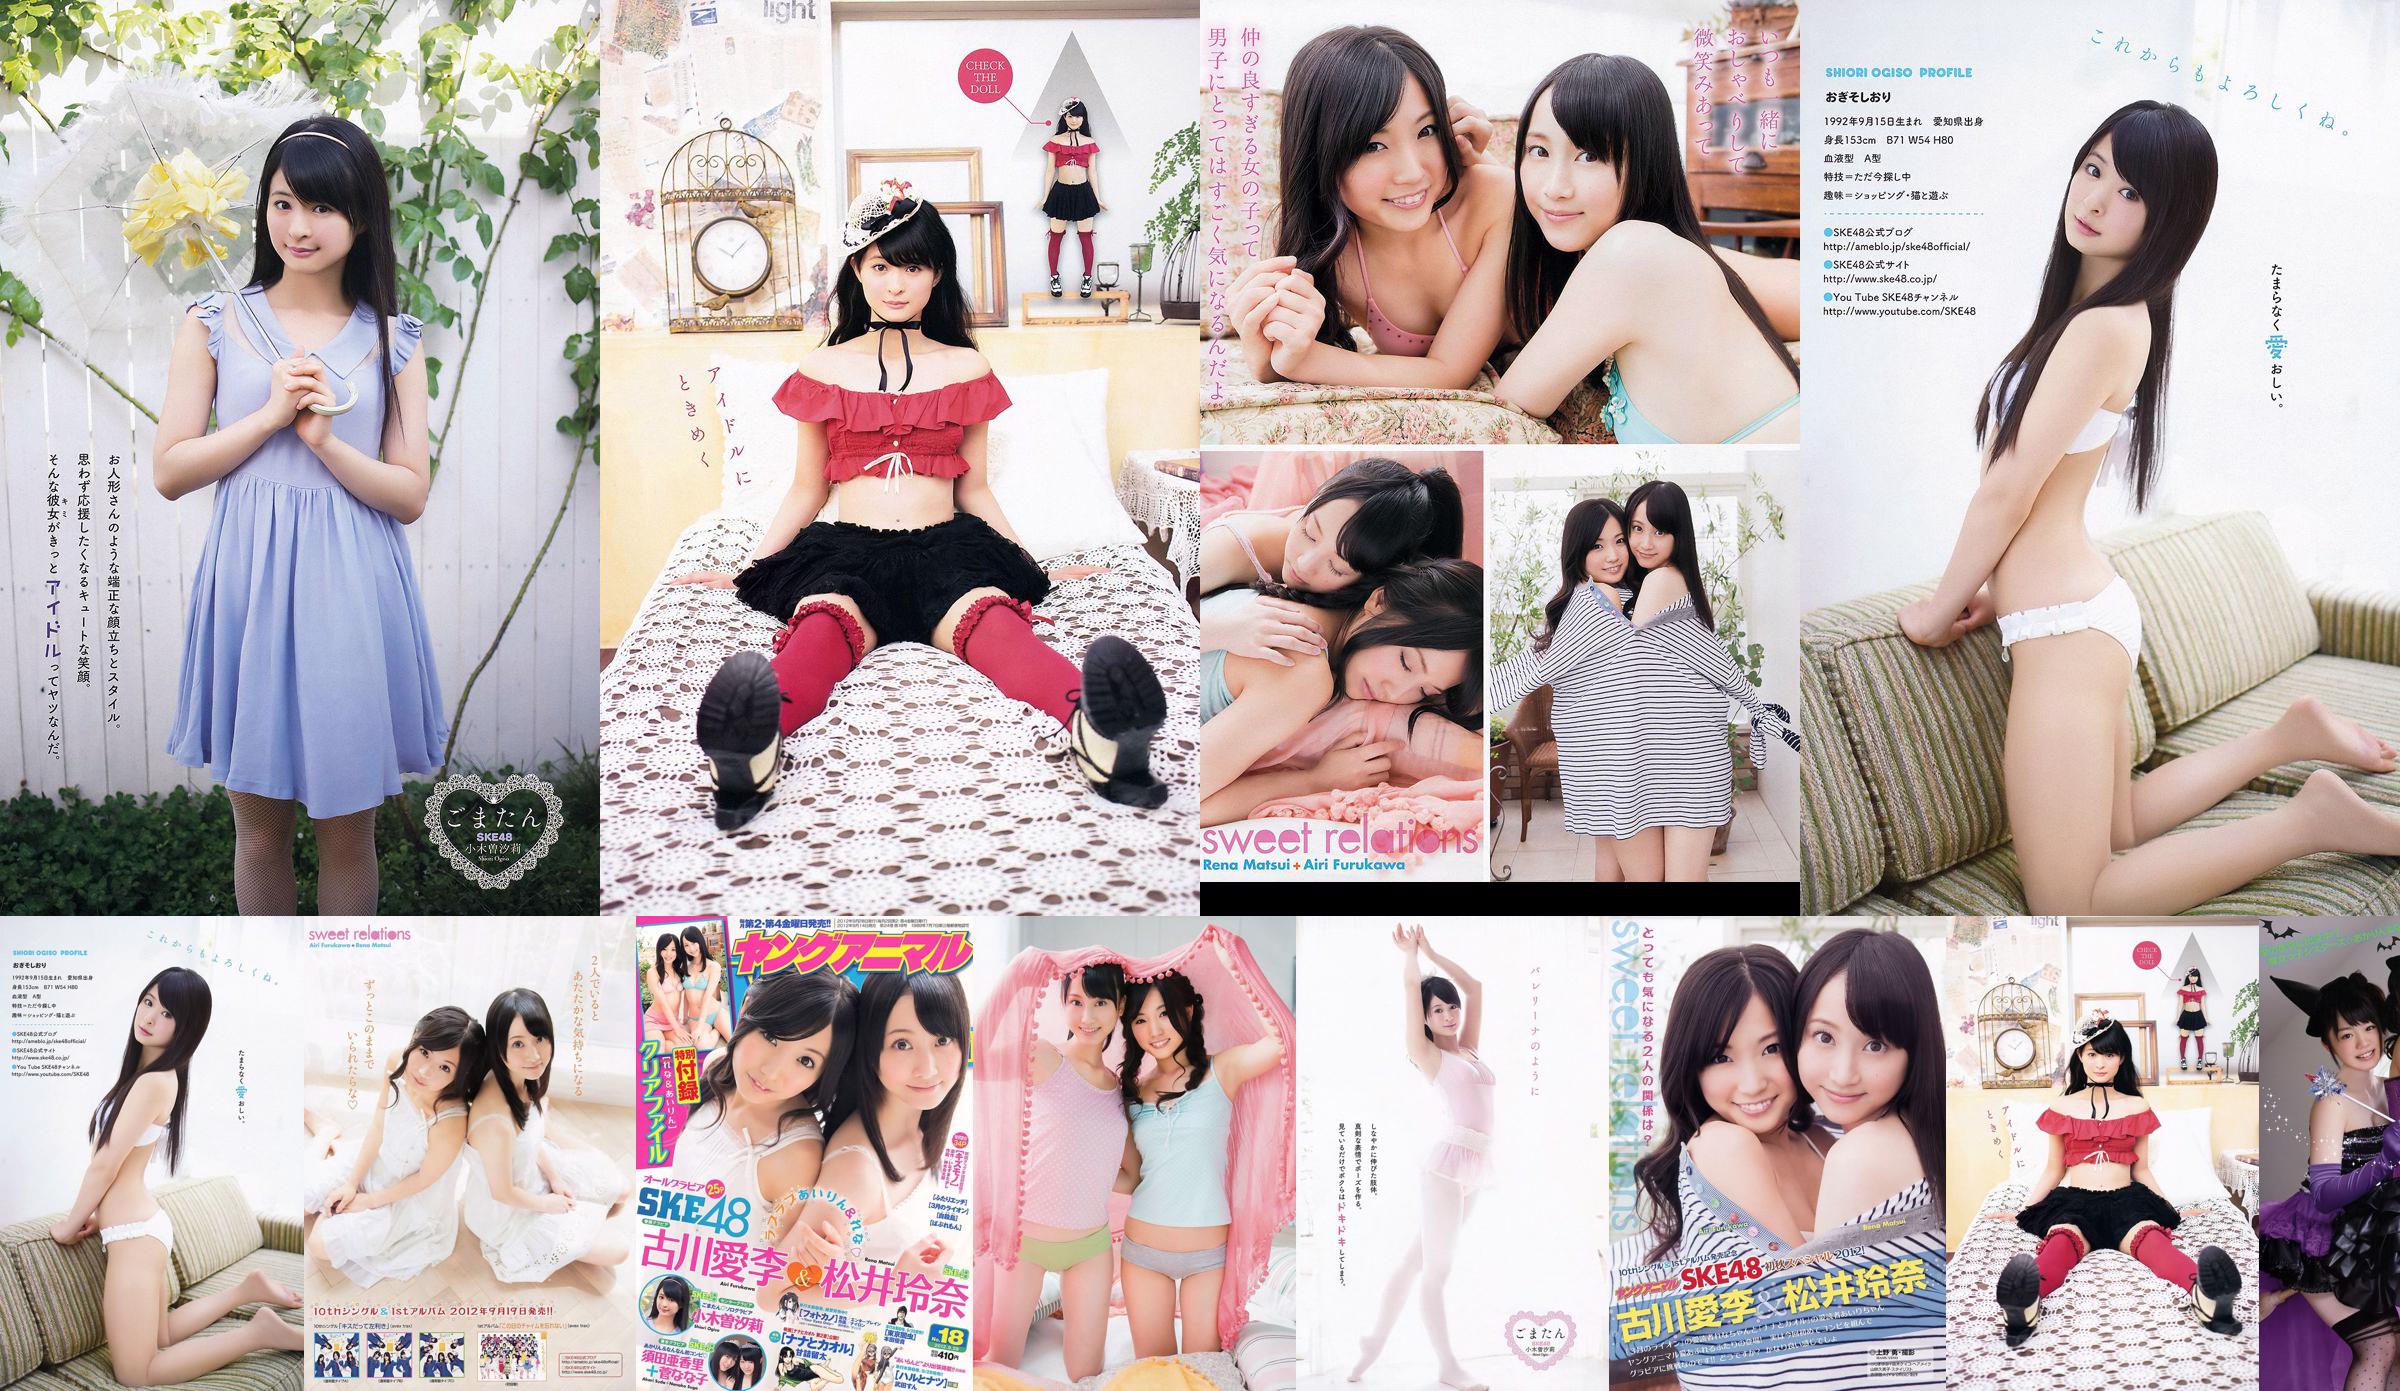 Ai Li Furukawa, Rena Matsui, Sasa Ogi, Aikari Suda [Young Animal] 2012 No.18 Photo Magazine No.1903c0 หน้า 5